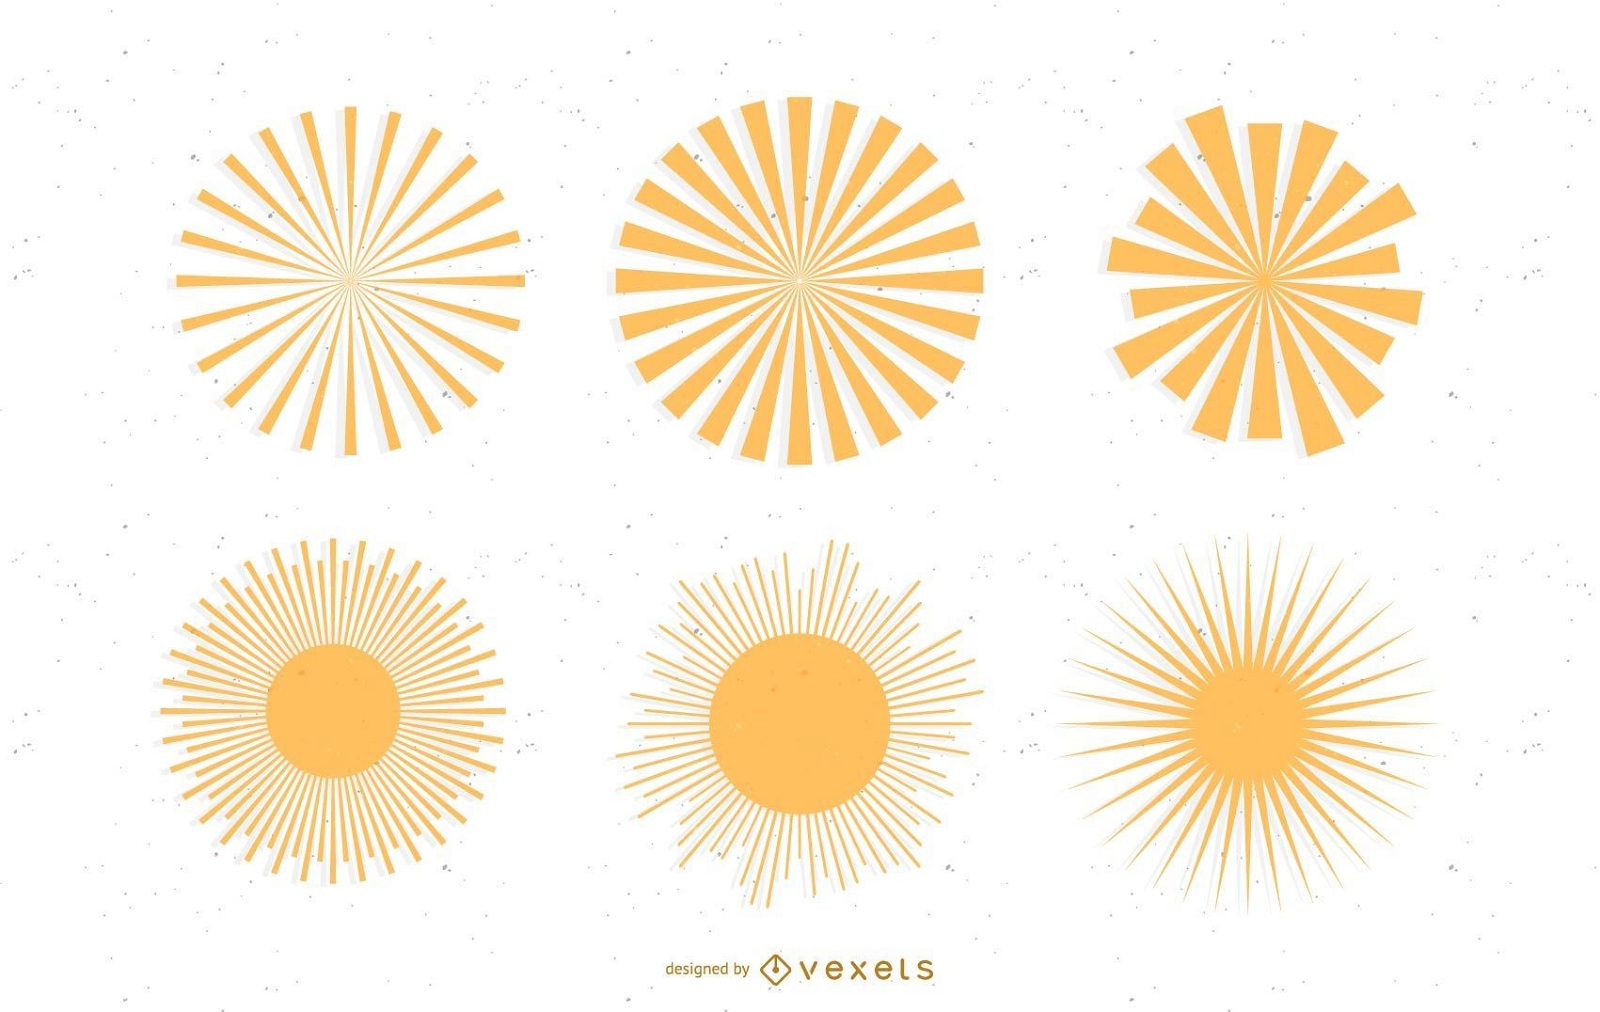 Sonnenstrahl: SVG-Vektoren